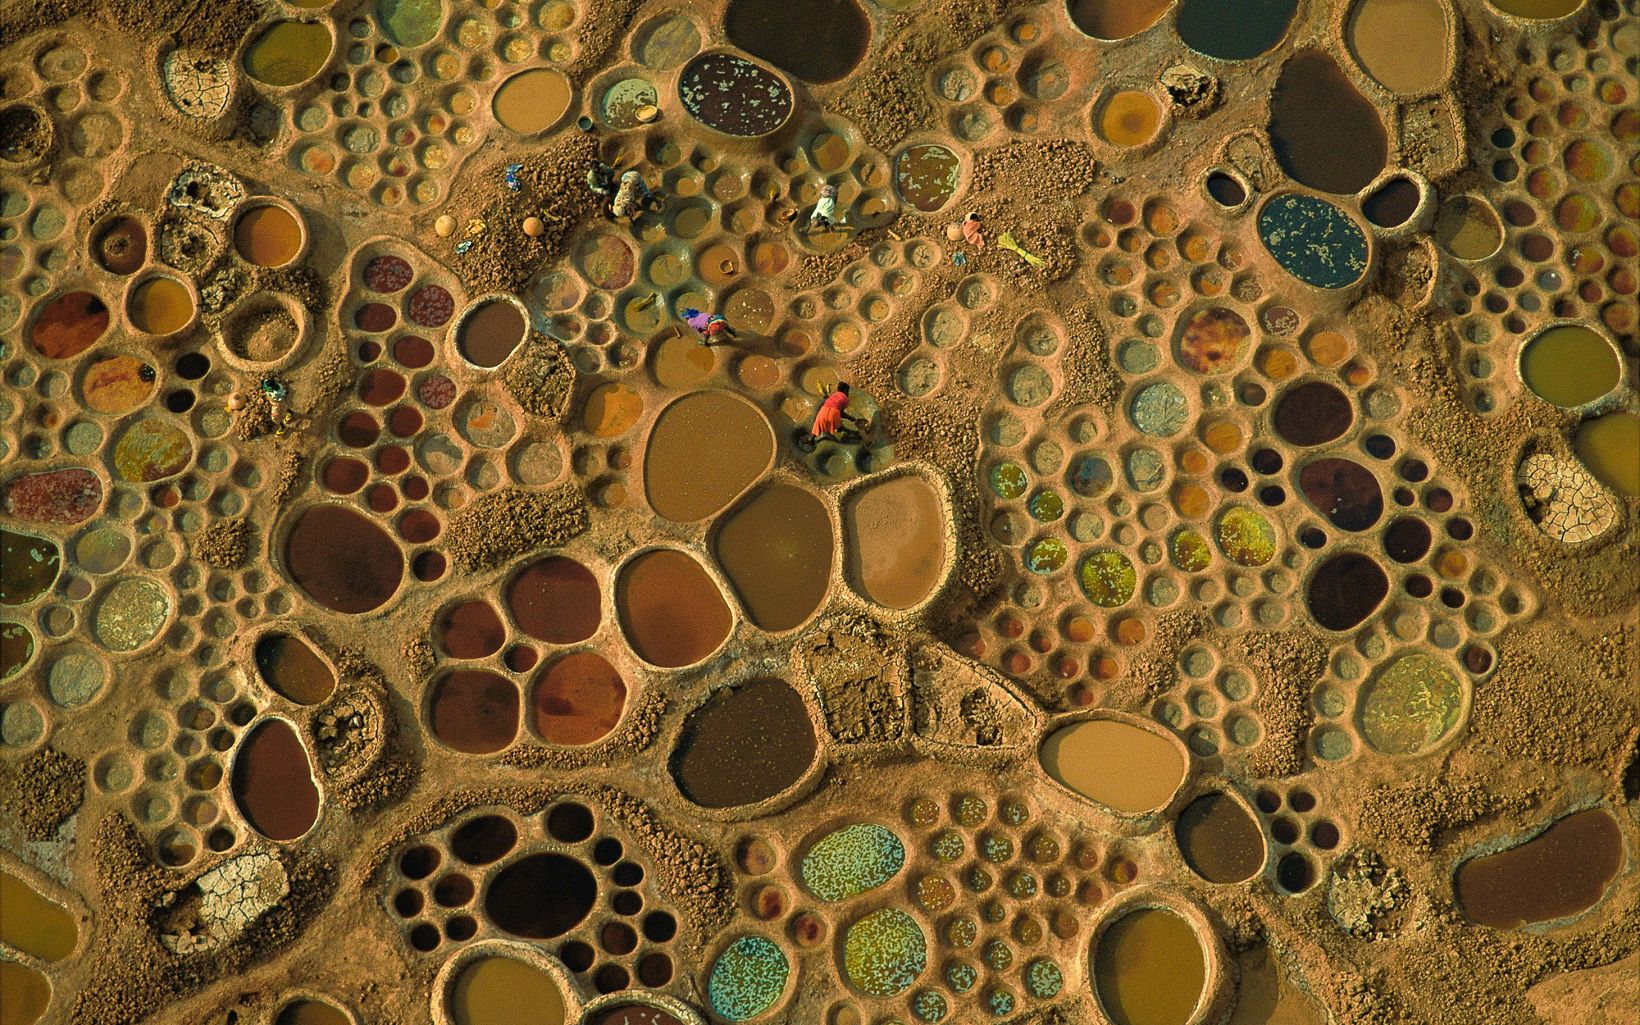 Pools of evaporating salt water in Niger